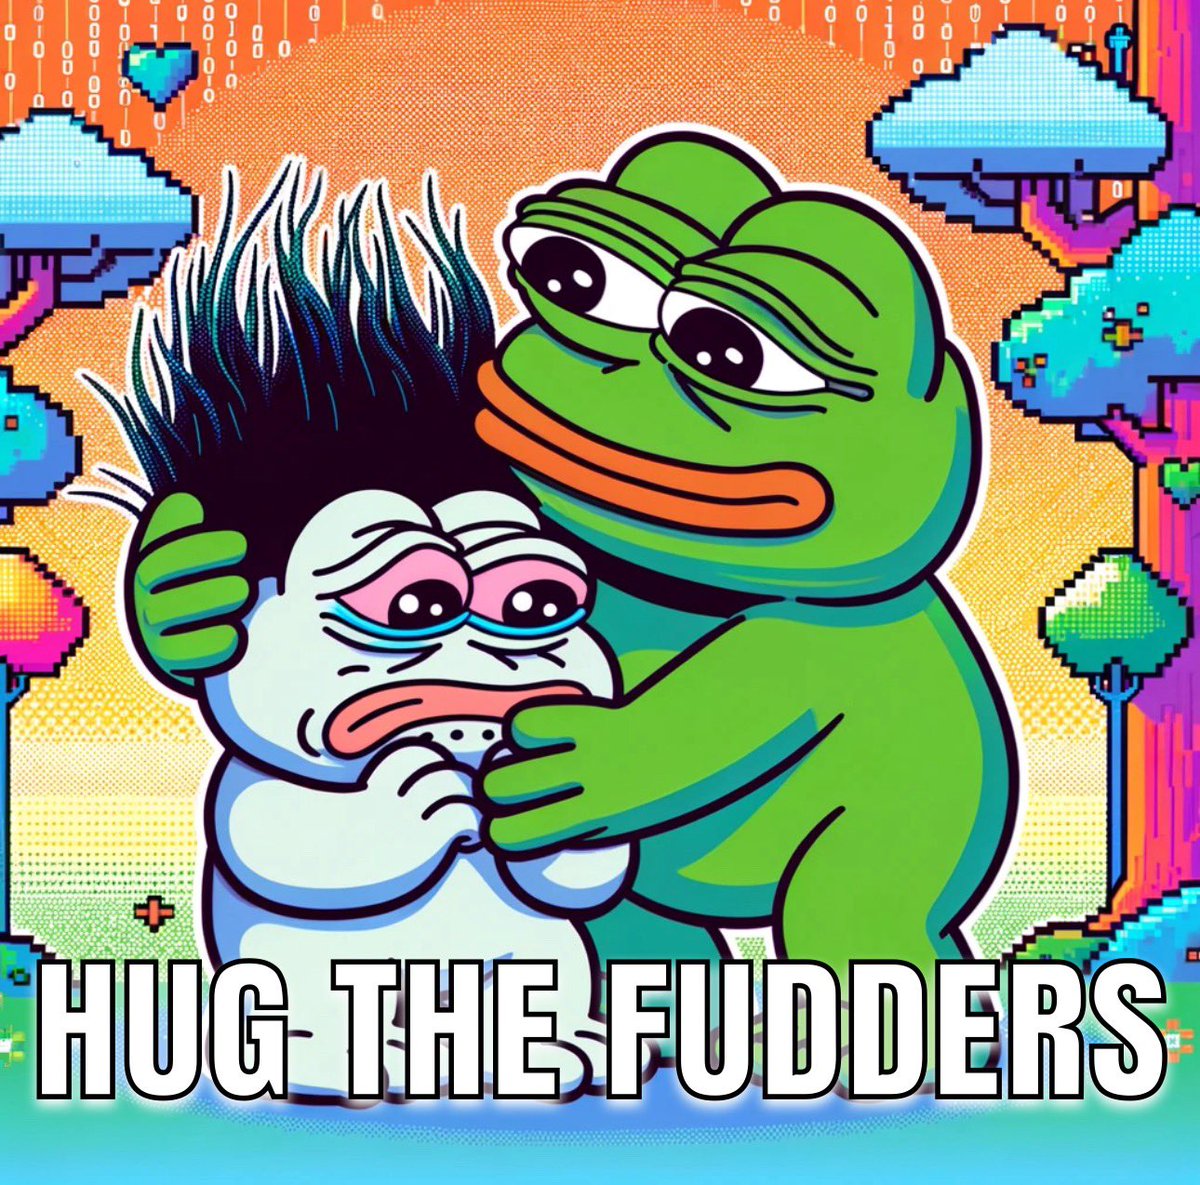 Rule #2: Hug the Fudders